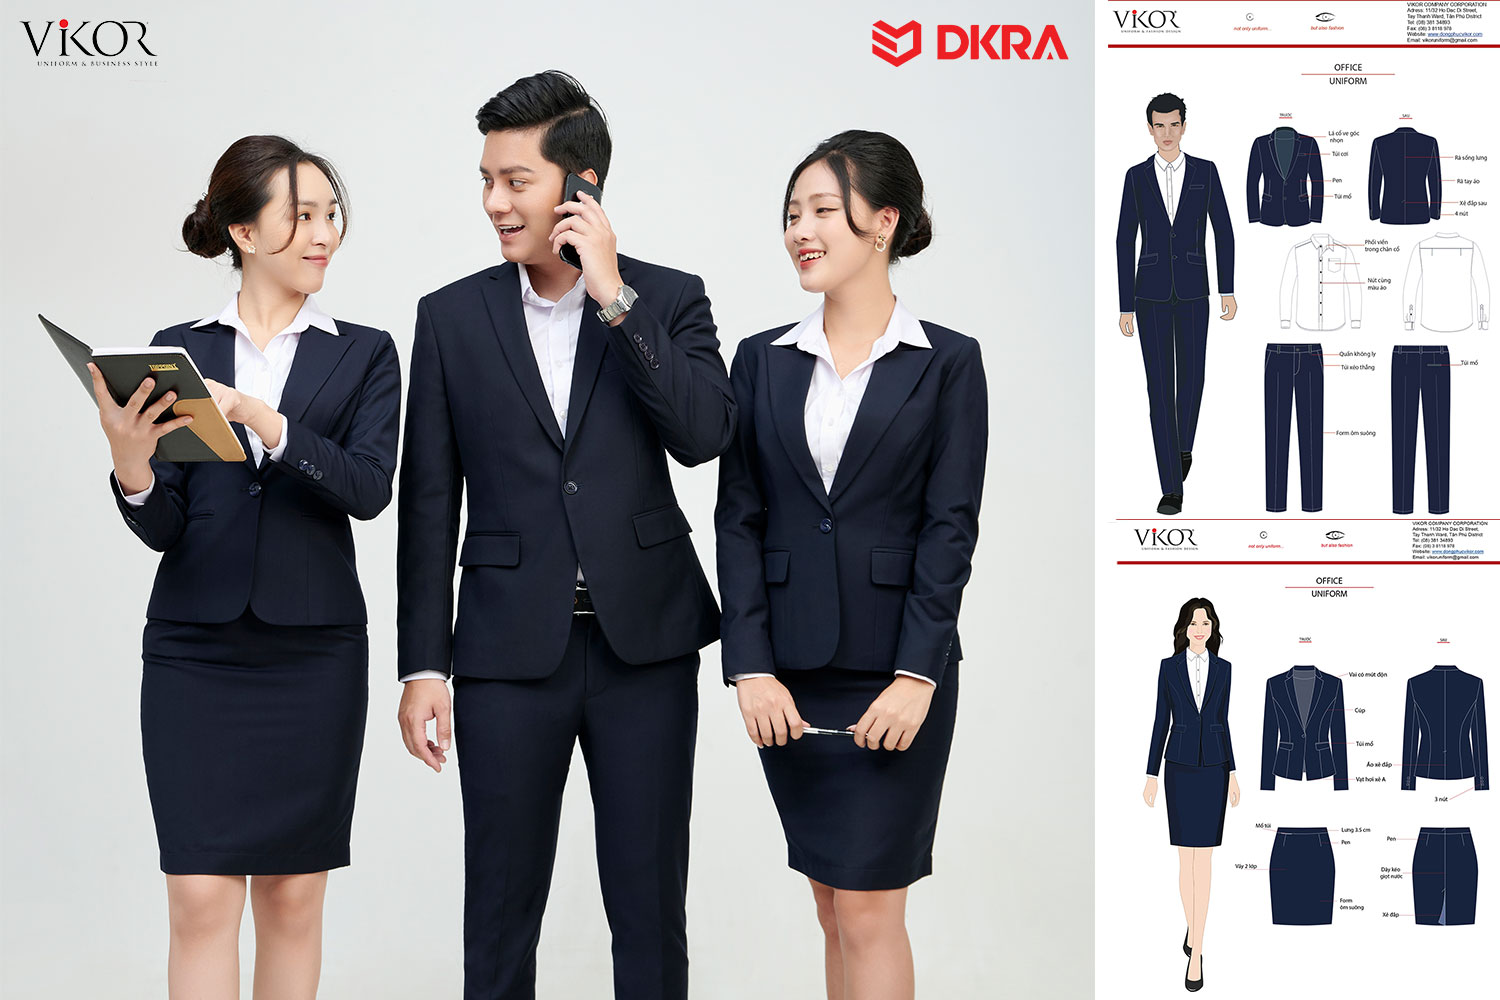 Đồng phục bất động sản DKRA được thiết kế bởi VIKOR.